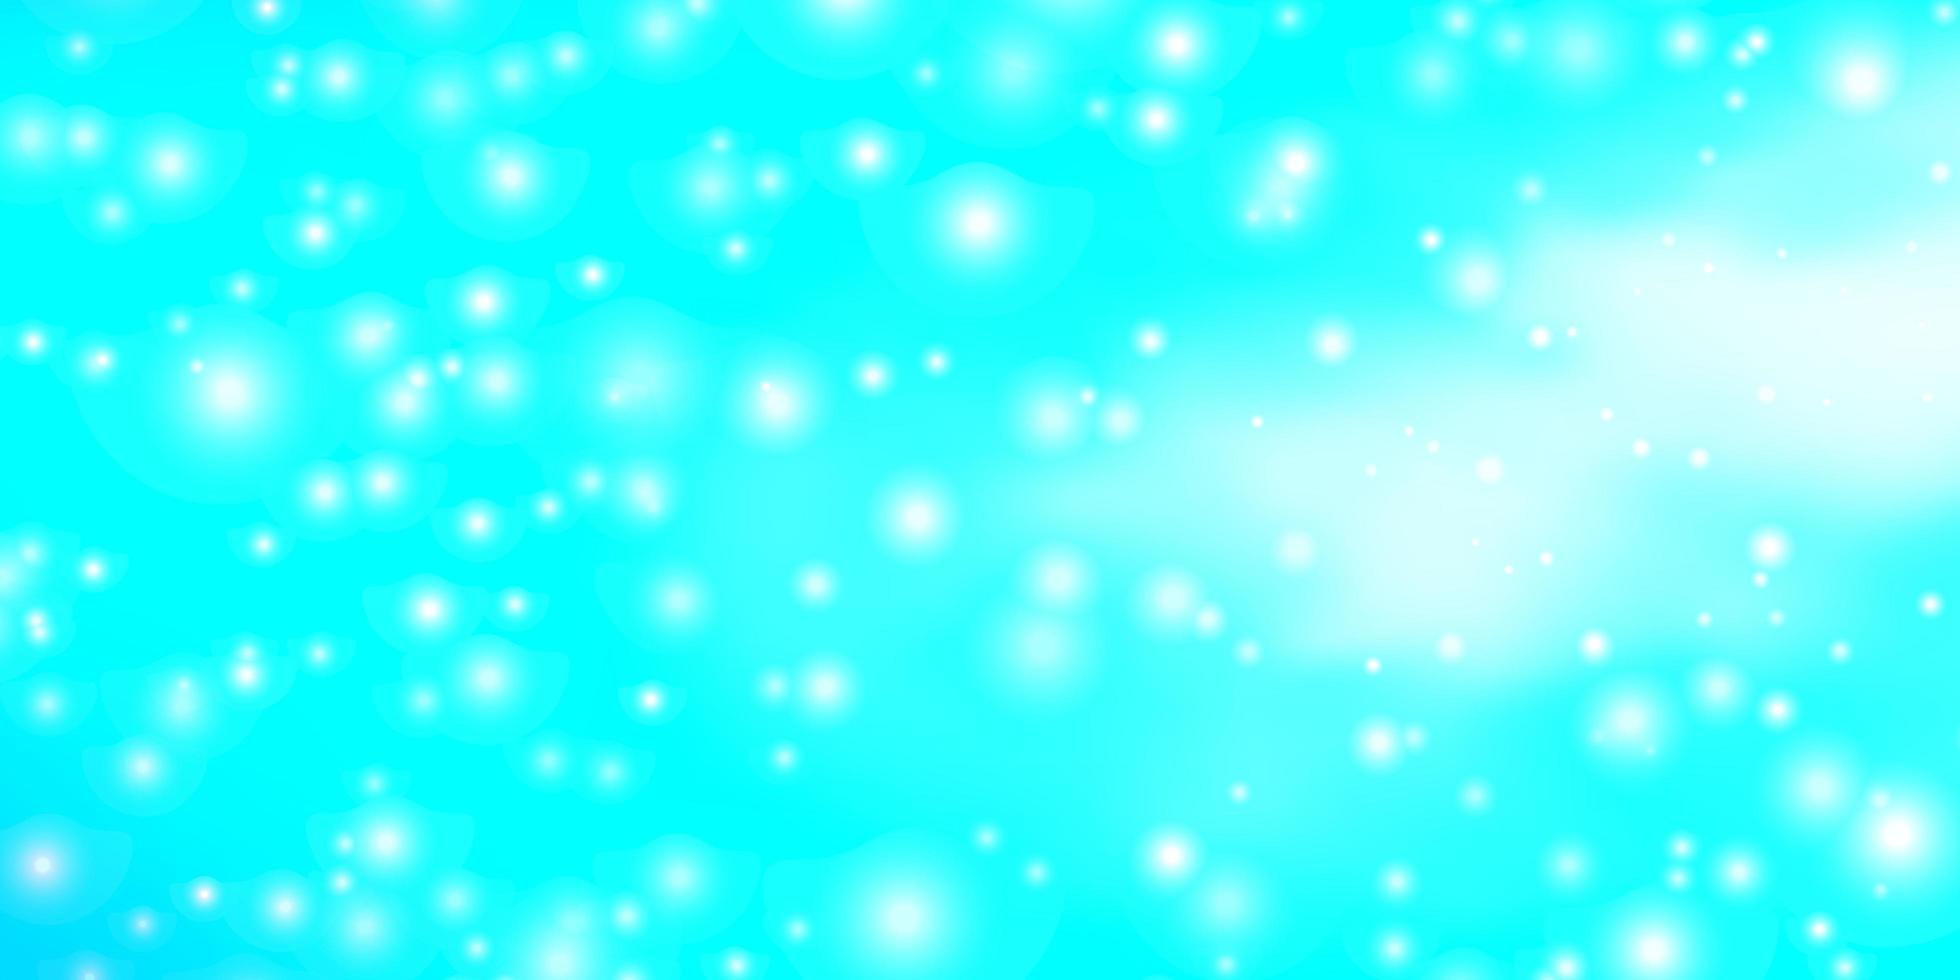 fond de vecteur vert bleu clair avec des étoiles colorées illustration abstraite géométrique moderne avec motif d'étoiles pour emballer des cadeaux